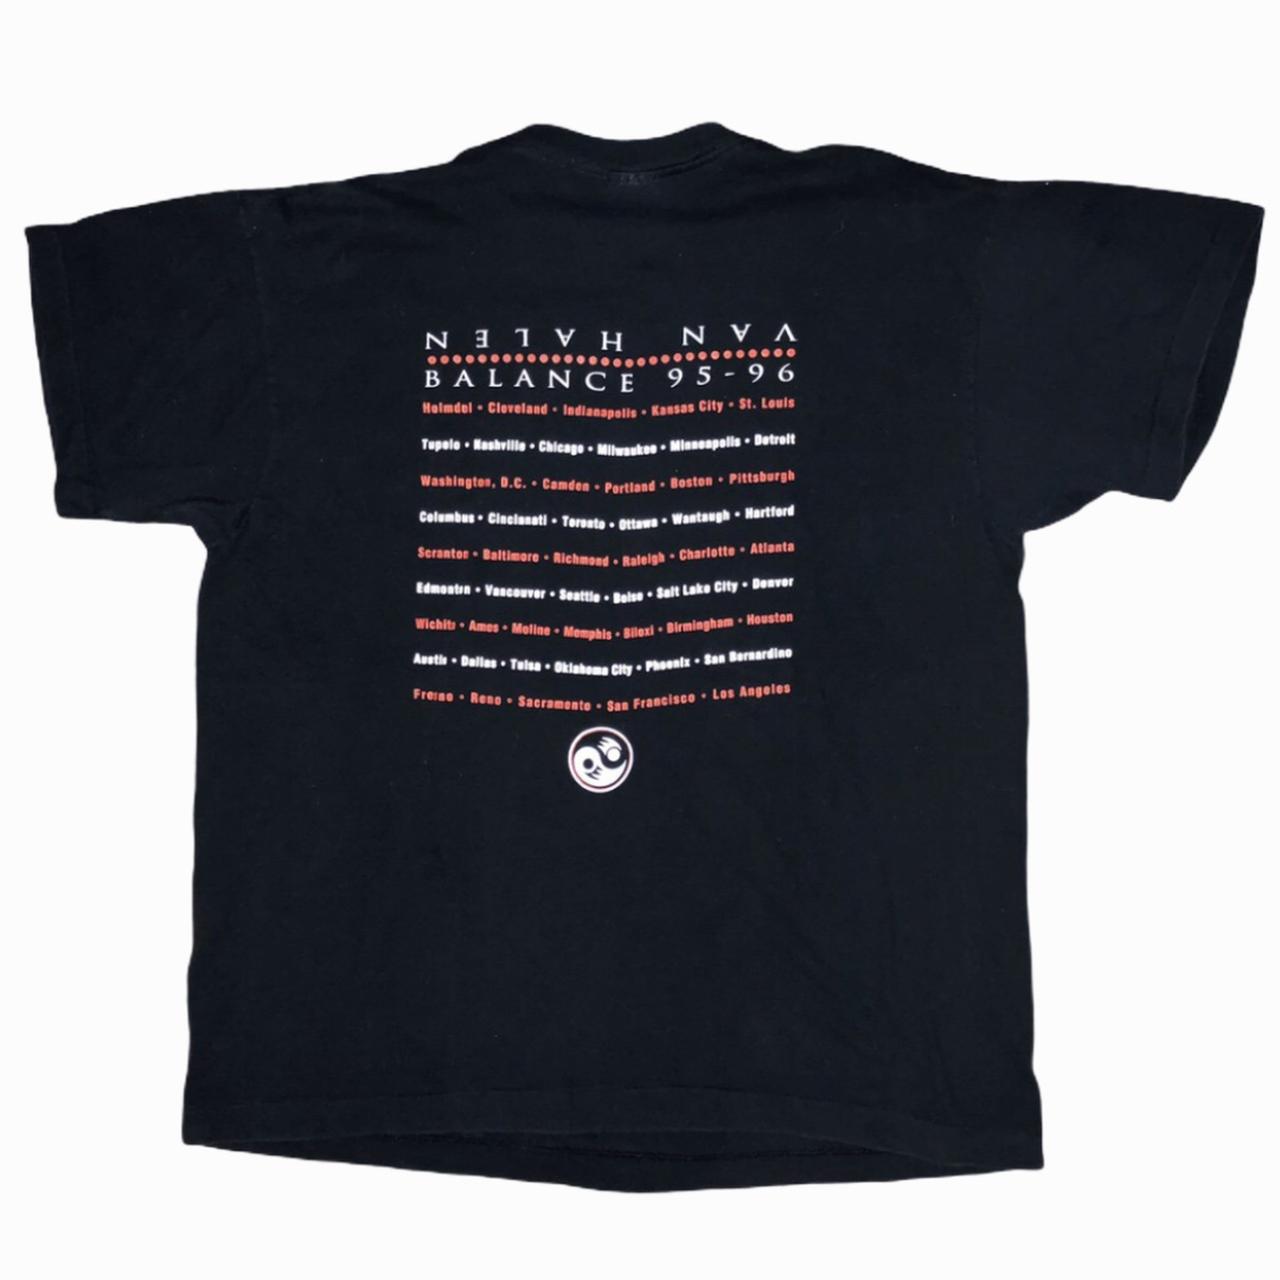 Vintage 1995 Van Halen Balance Tour T-shirt Size:... - Depop